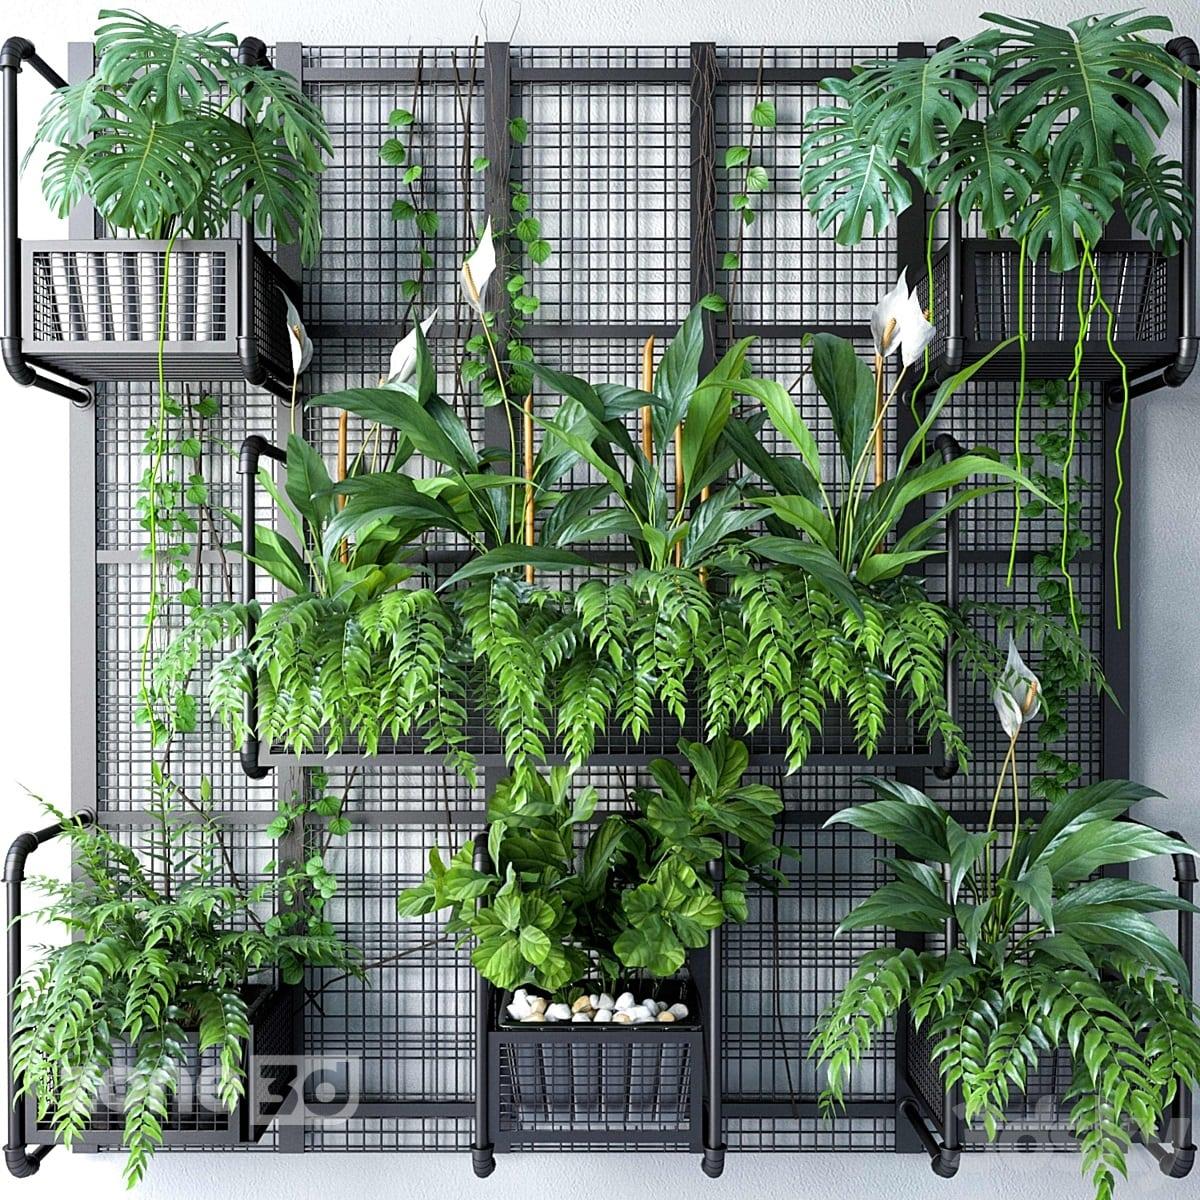 آبجکت دیوار سبز با بدنه فلزی توری به همراه گلدان و گیاهان مدل JC Wall Grid